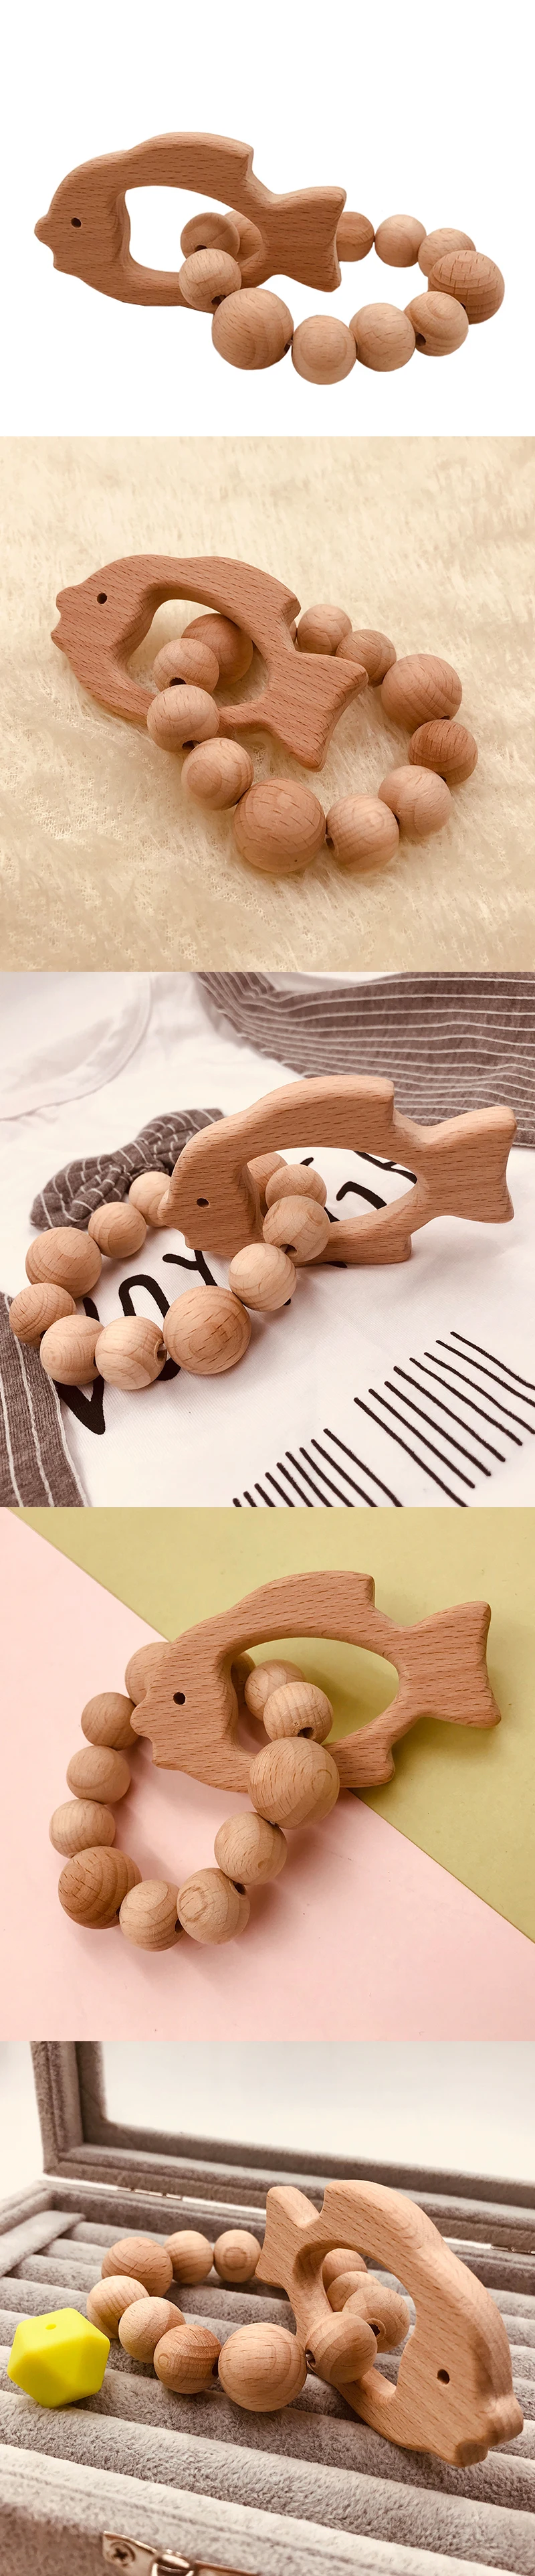 Буковые бусины-прорезыватели, набор колец, необработанный Прорезыватель бука с органический деревянный игрушечный деревянный браслет для животных, детский деревянный прорезыватель, браслет